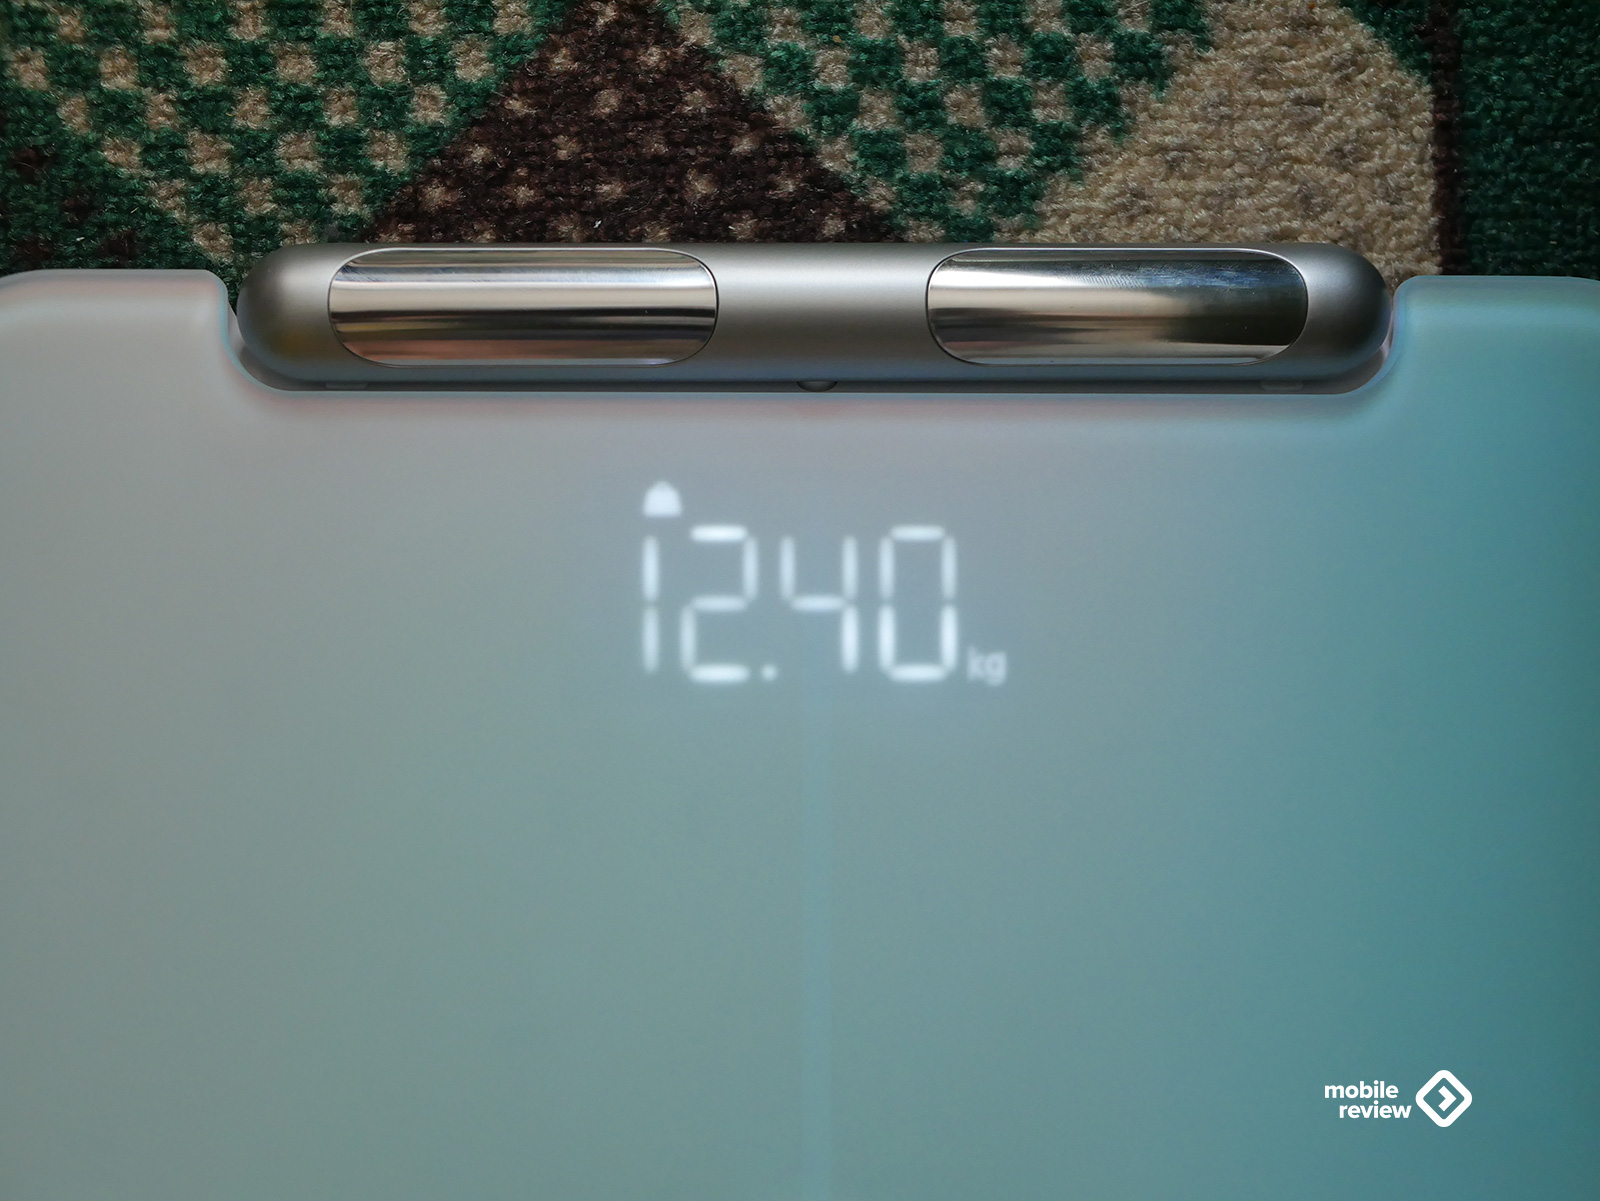 Умные весы Huawei Scale 3 Pro: правильный и полезный гаджет в вашей семье